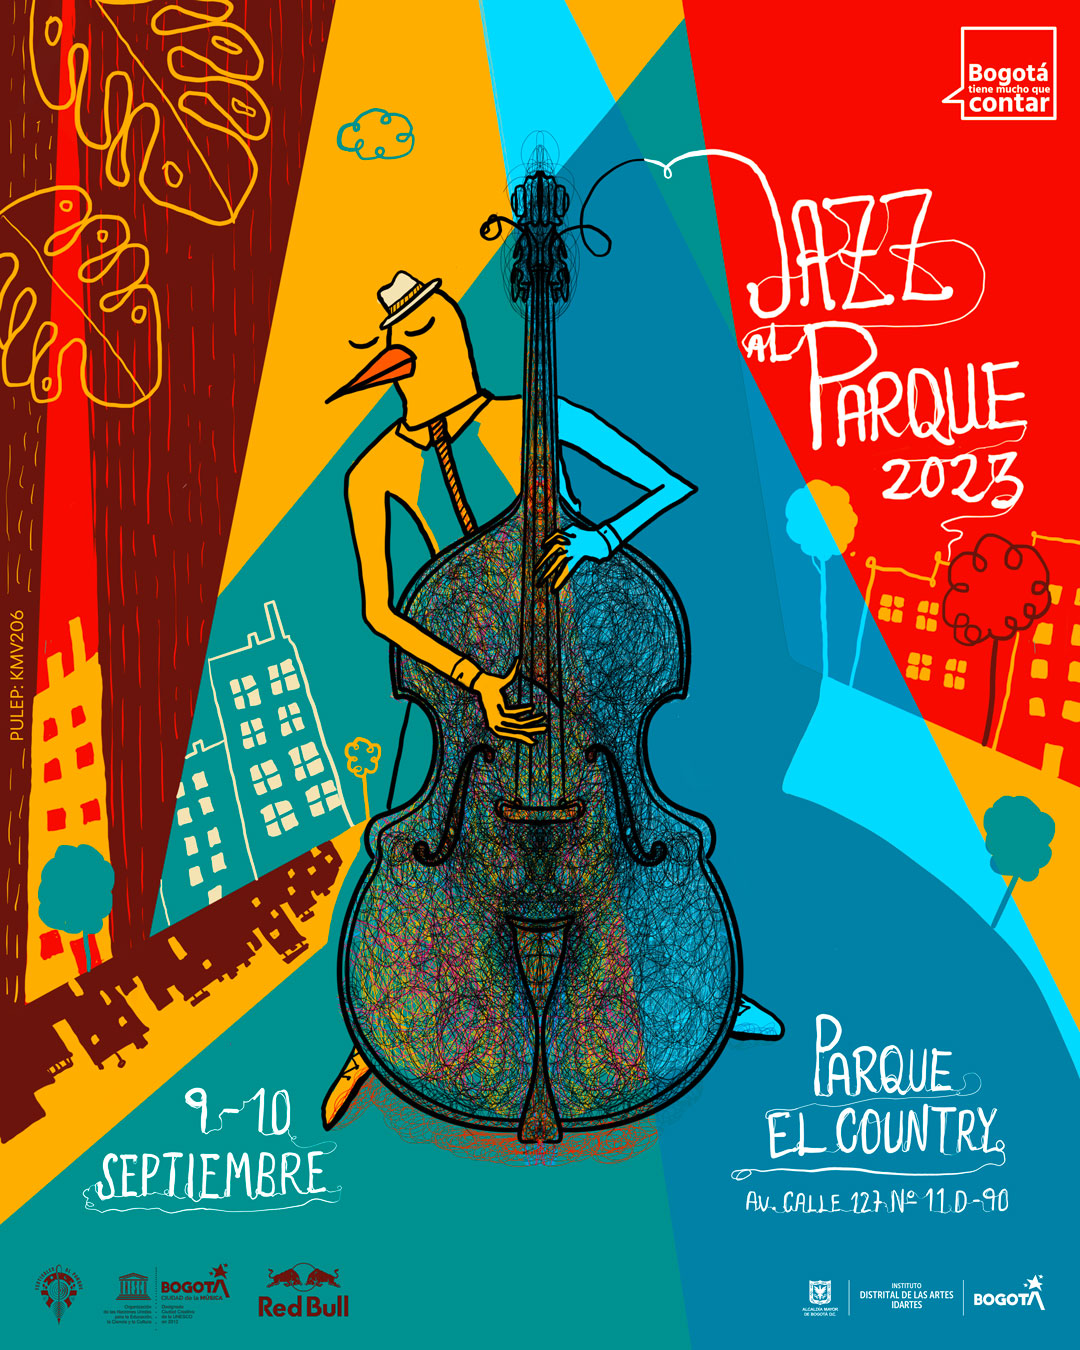 Pieza gráfica ilustrada de Jazz al Parque 2023